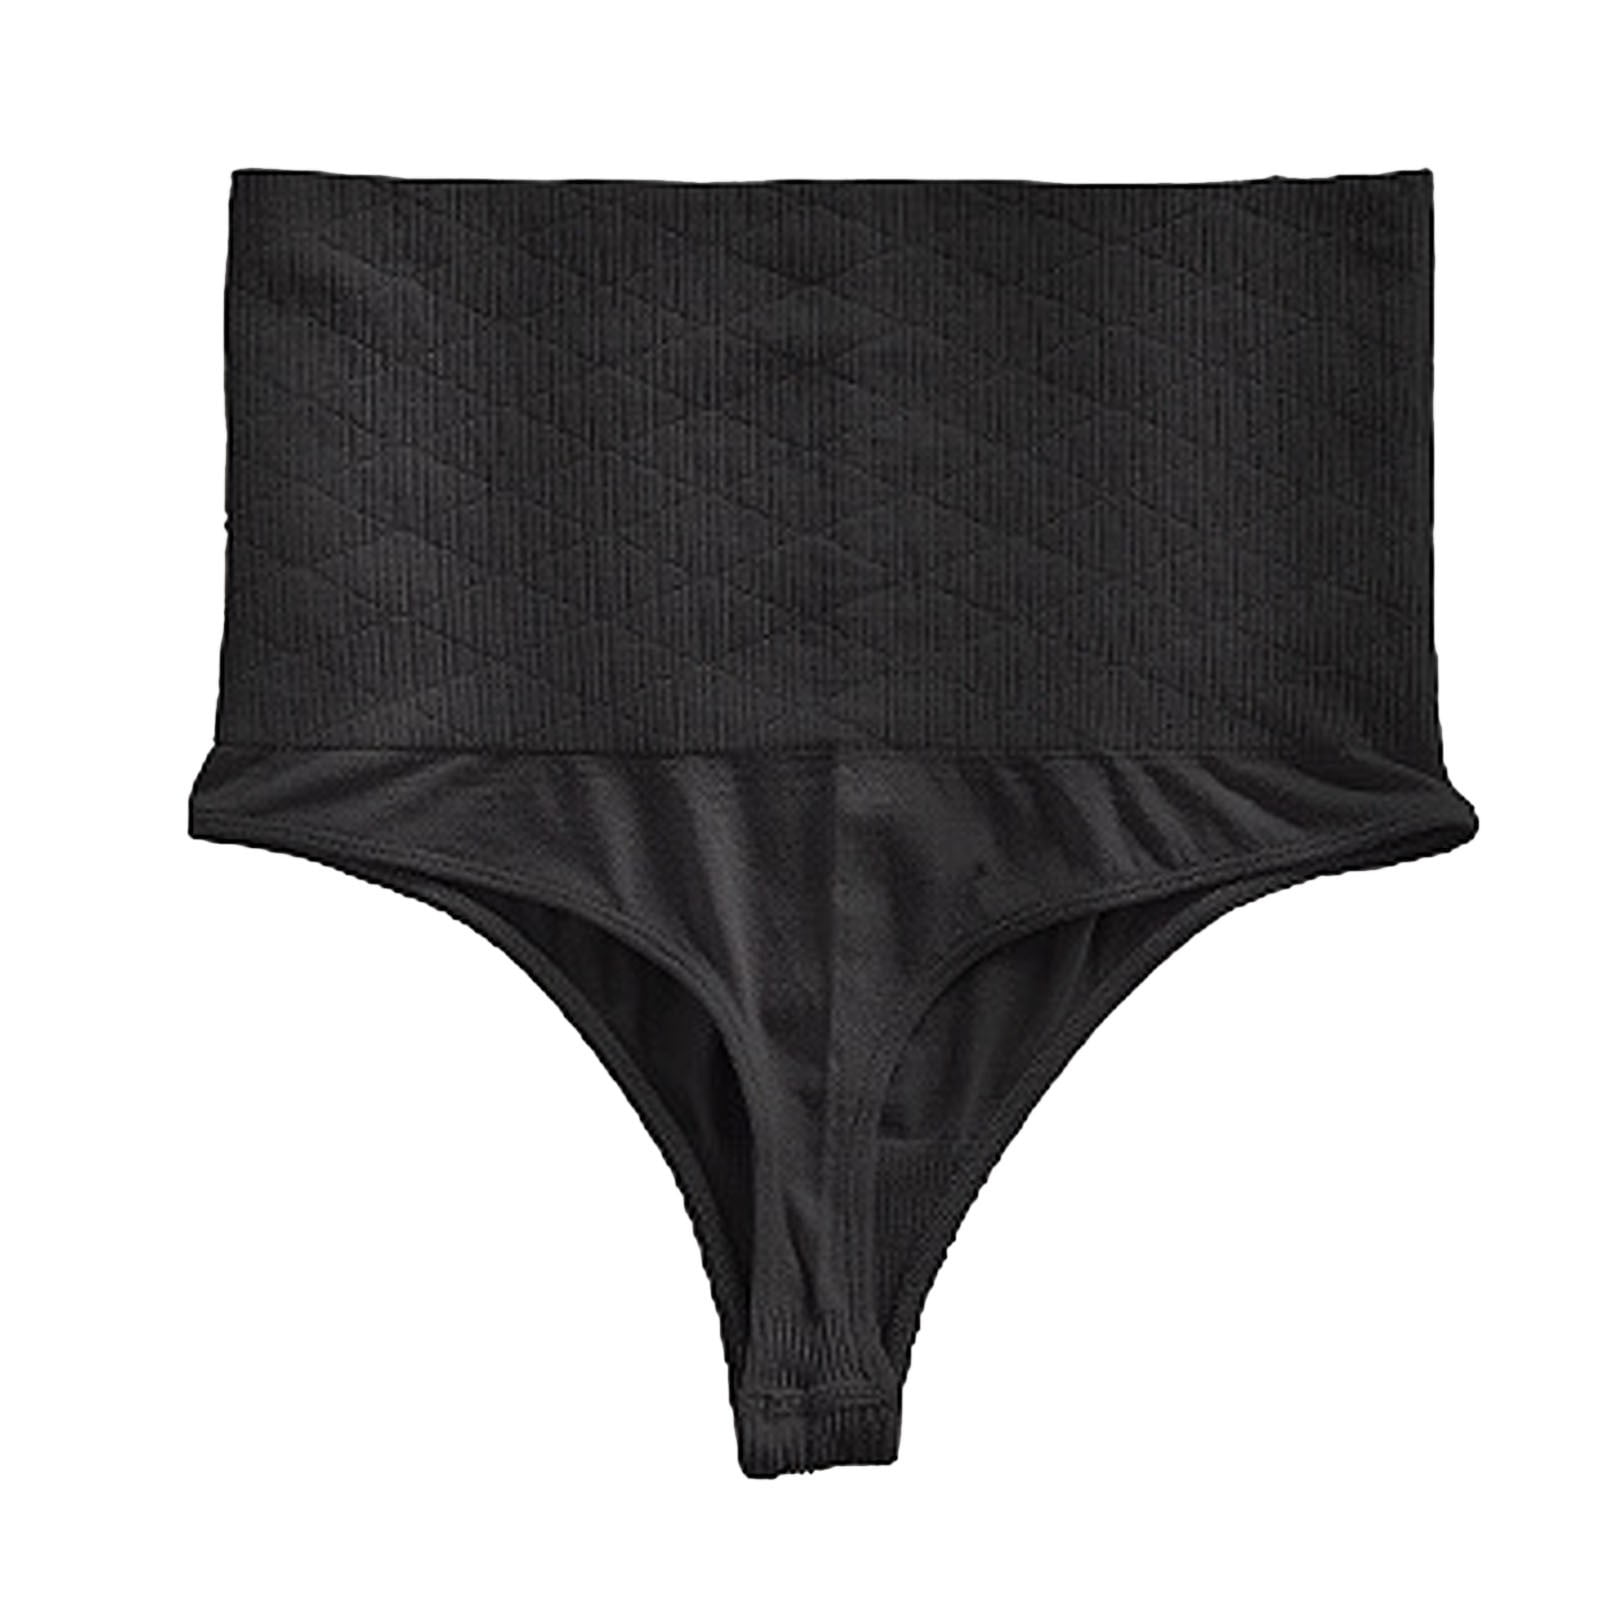 Cuekondy Underwear Women Bikini Hot Crochet Lace Lace-up Panty